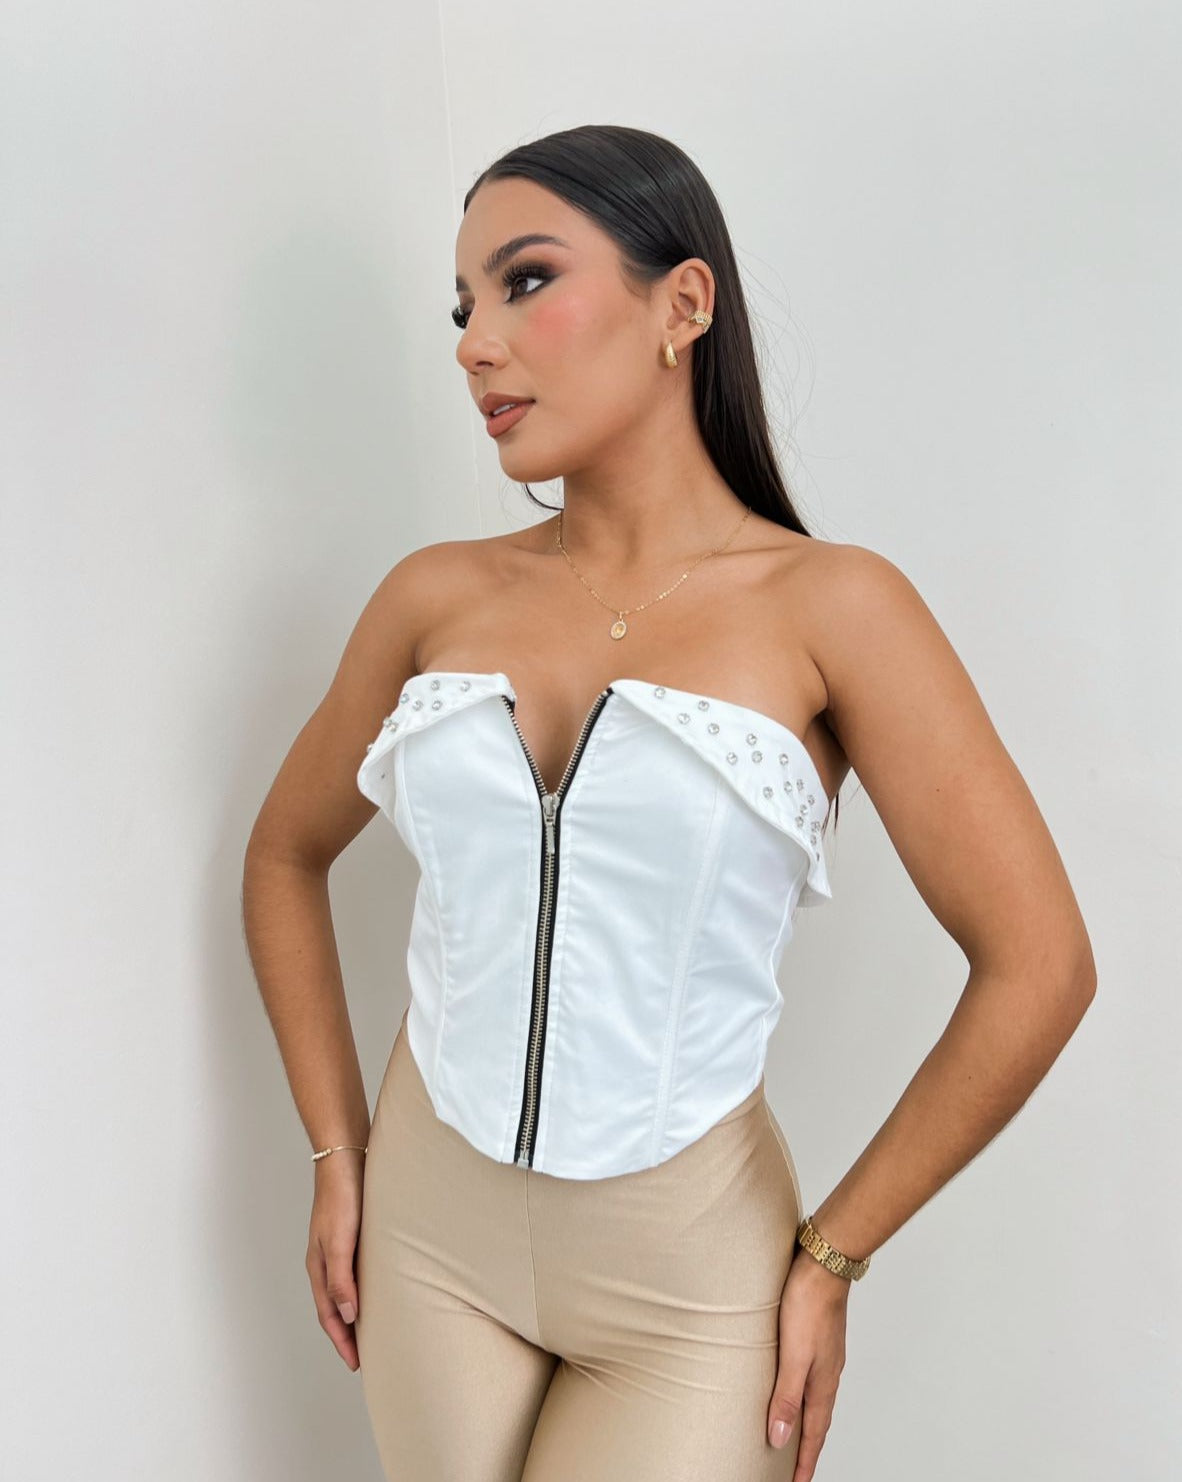 Mujer vistiendo un corset blanco con cierre frontal y detalle de tachuelas, ideal para un look atrevido y moderno. Disponible en KIKE RODRIGUEZ.